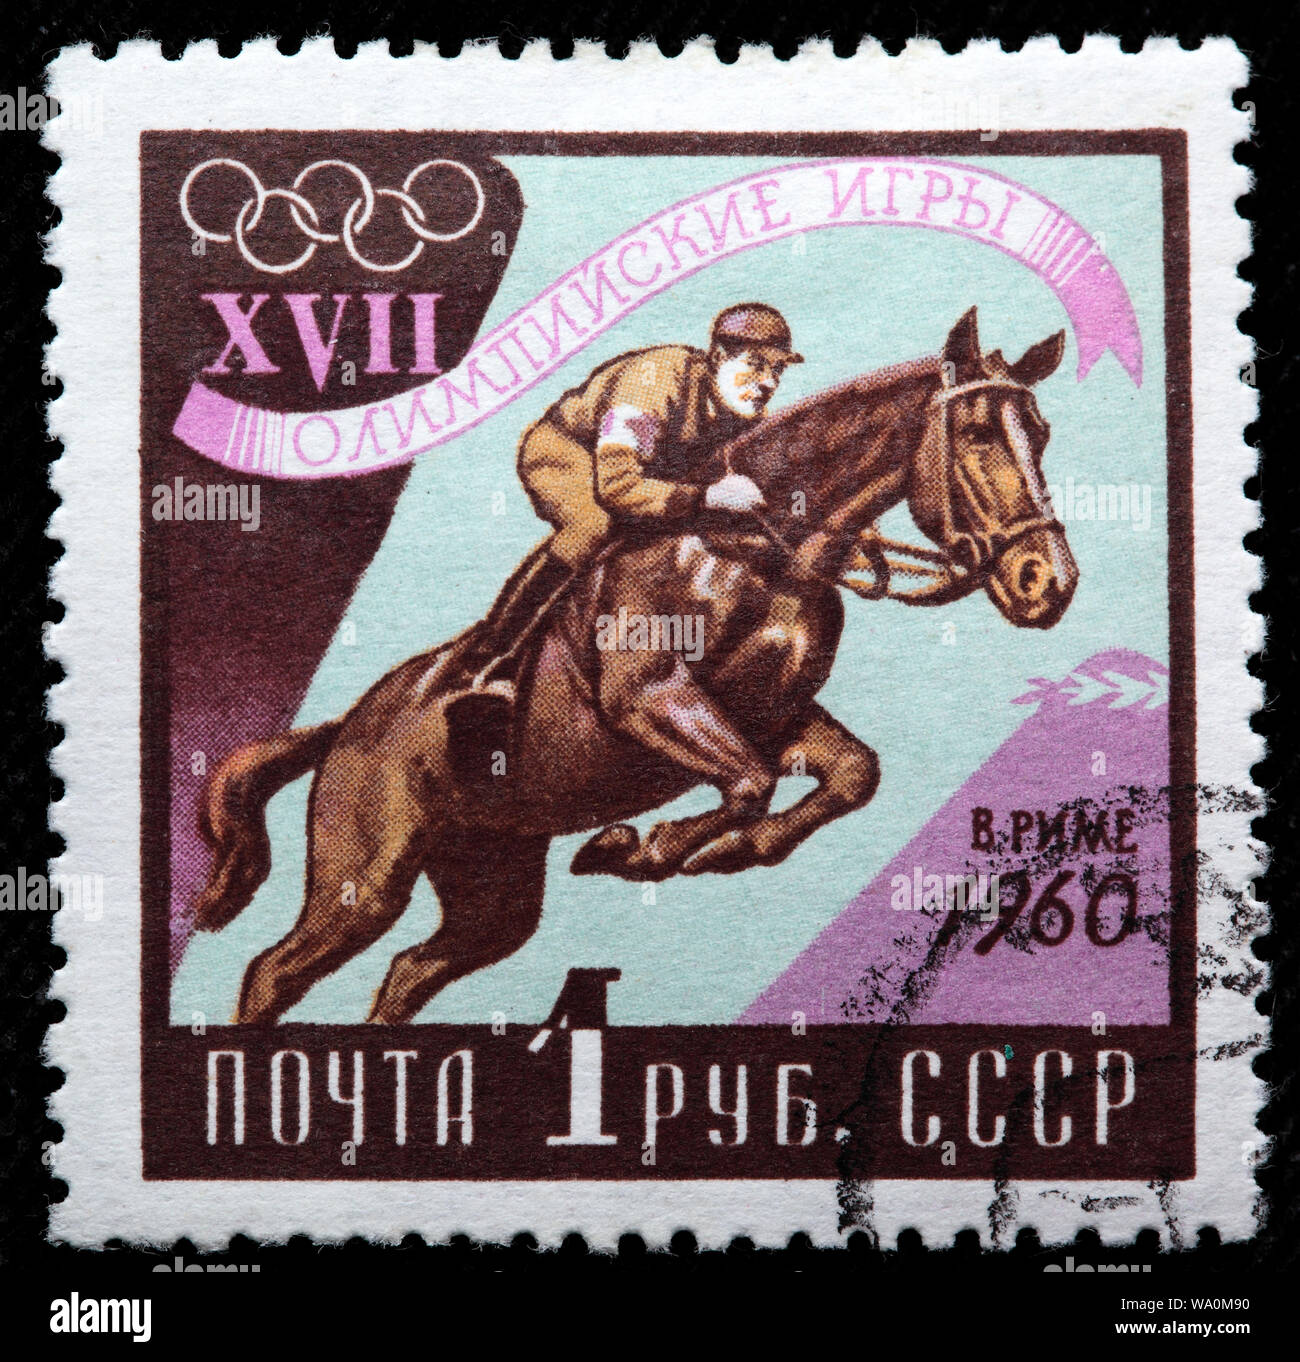 Jeux Olympiques d'été de 1960, équestres, Rome, timbre-poste, Russie, URSS, 1960 Banque D'Images